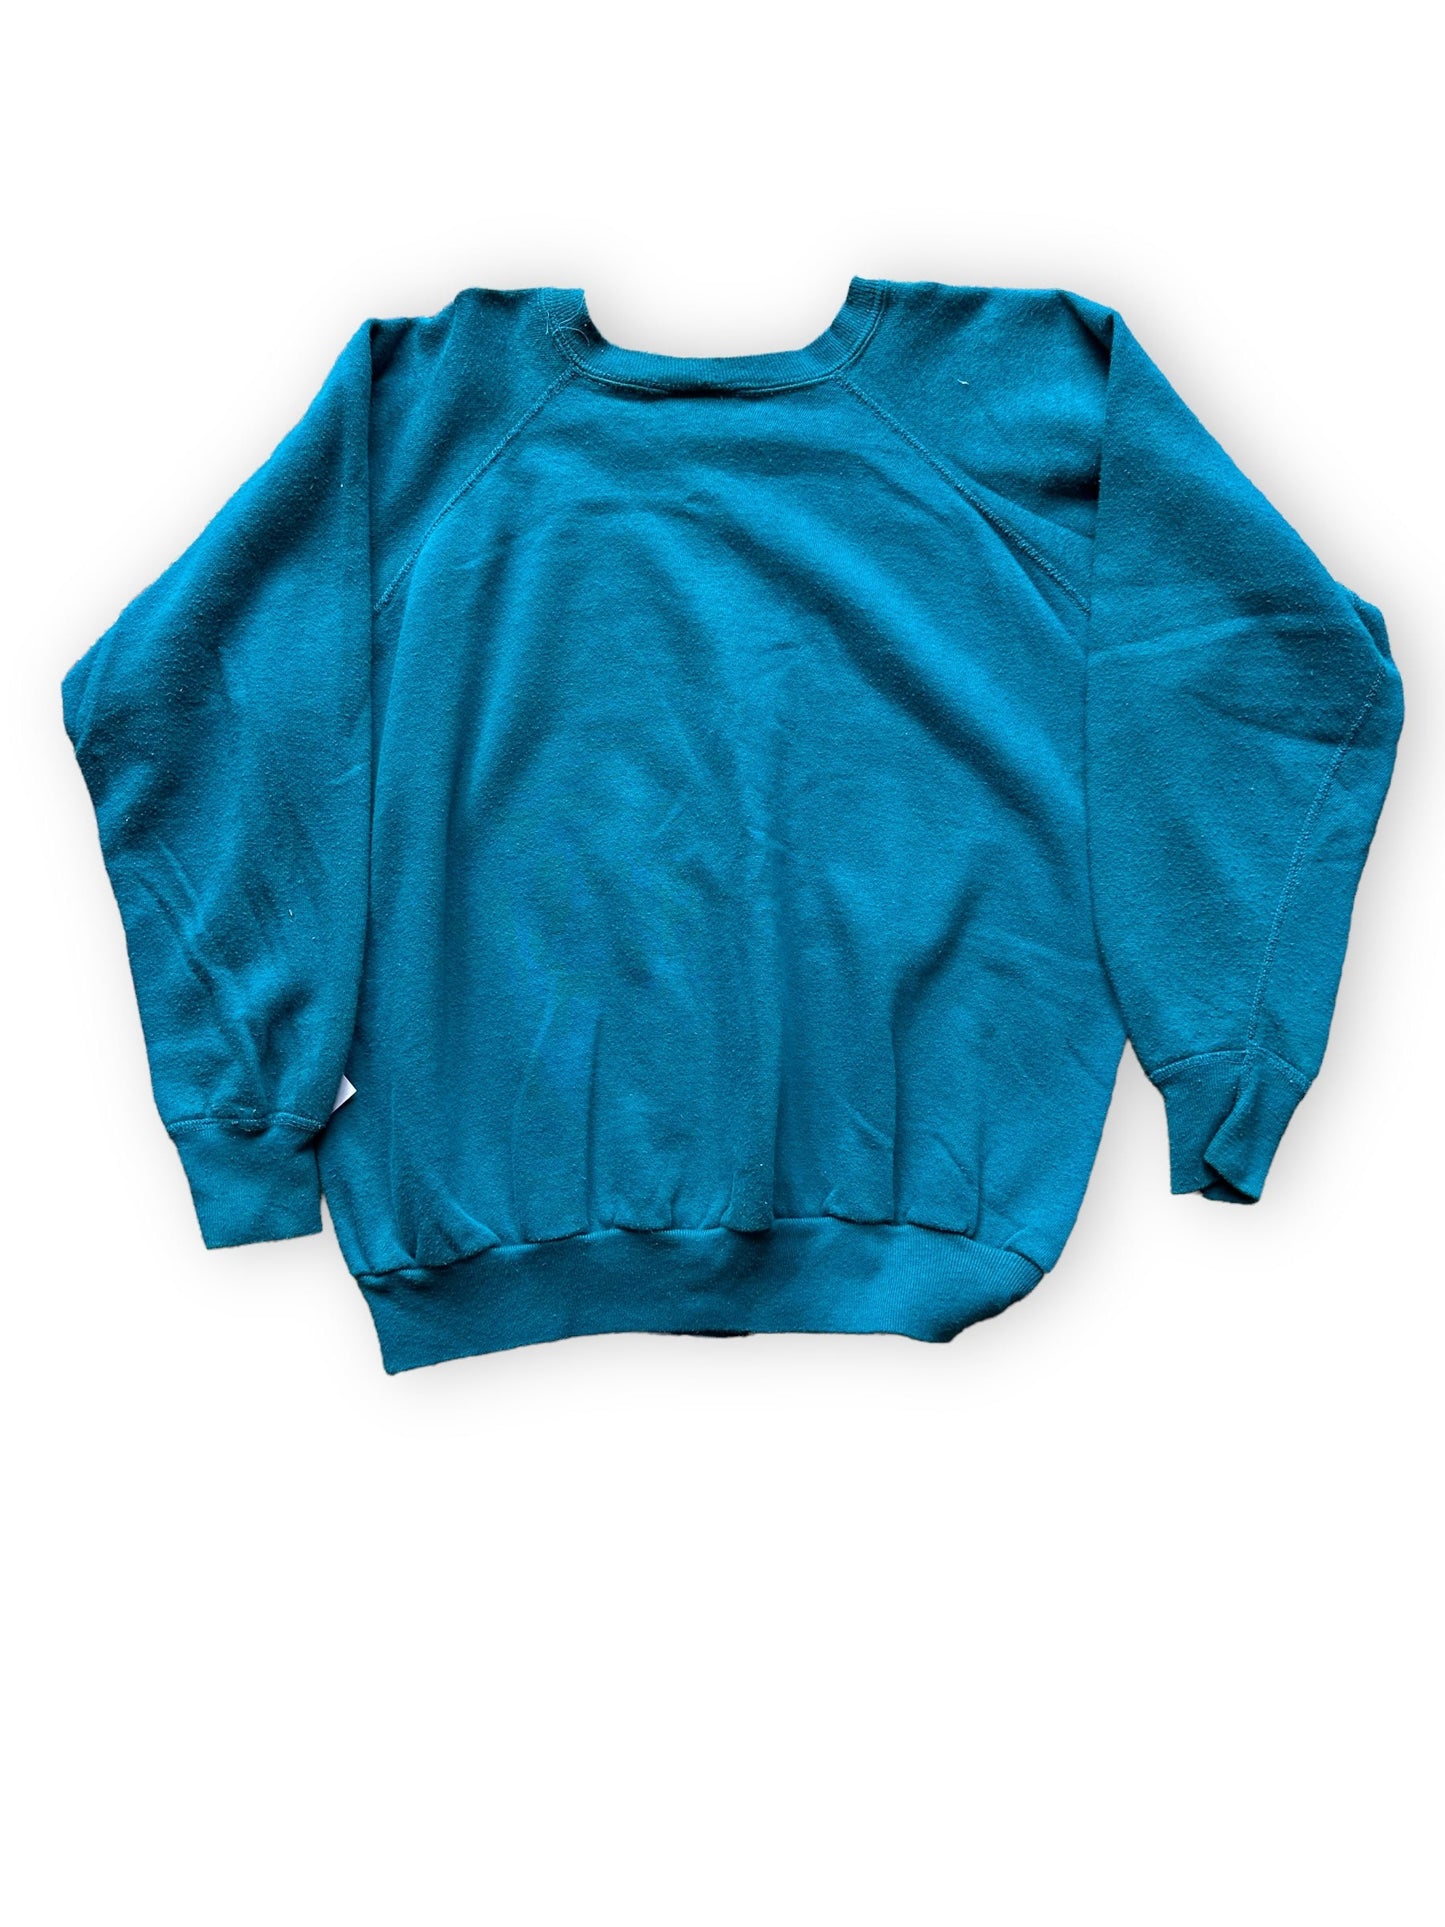 Rear View of Vintage Teal Raglan Blank Crewneck Sweatshirt | Vintage Crewneck Sweatshirt Seattle | Barn Owl Vintage Clothing